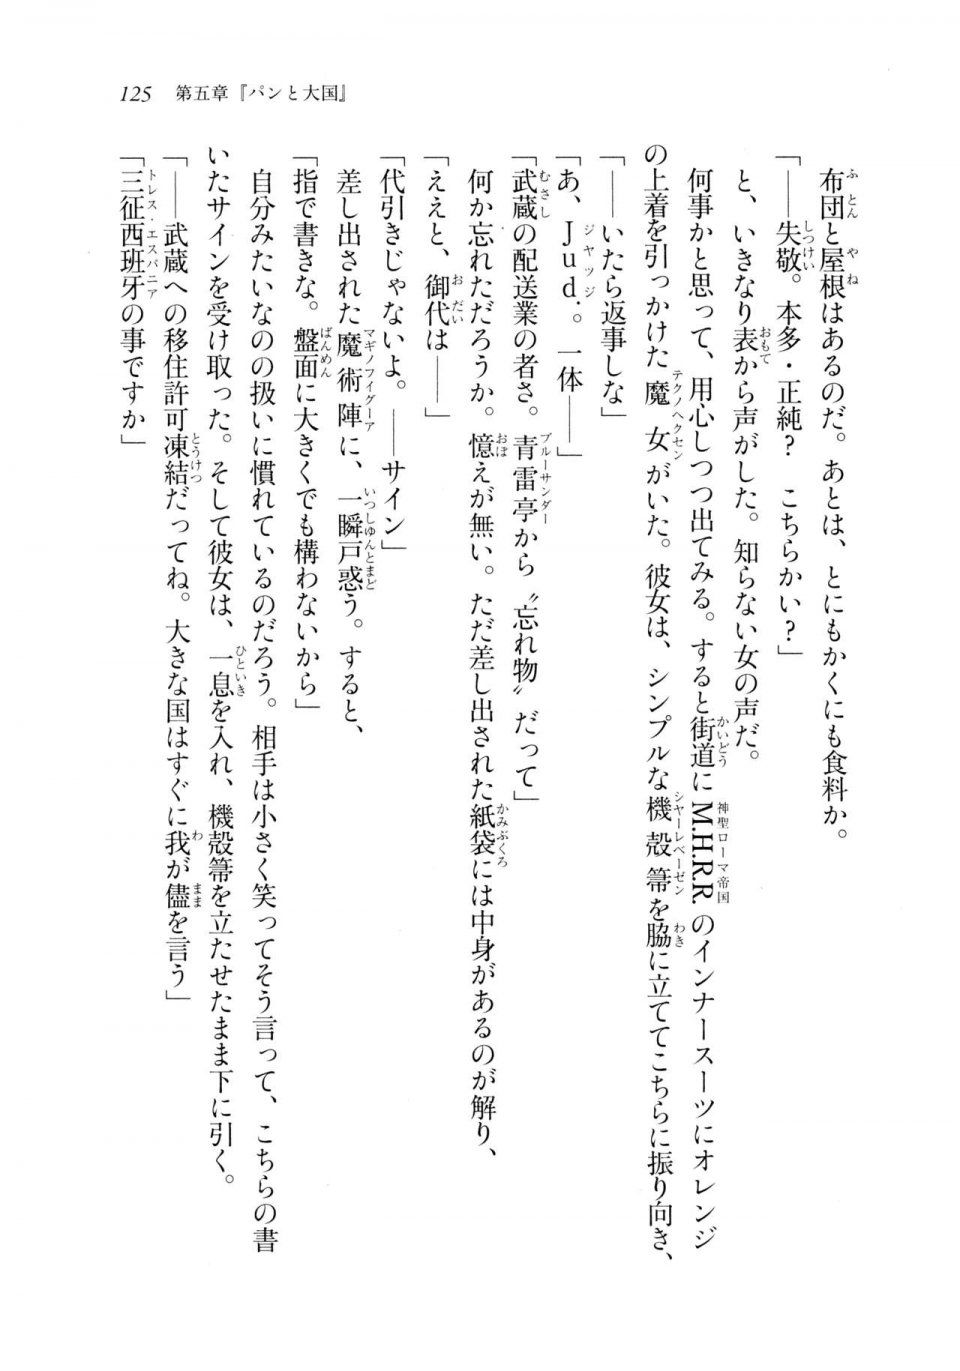 Kyoukai Senjou no Horizon LN Sidestory Vol 2 - Photo #123